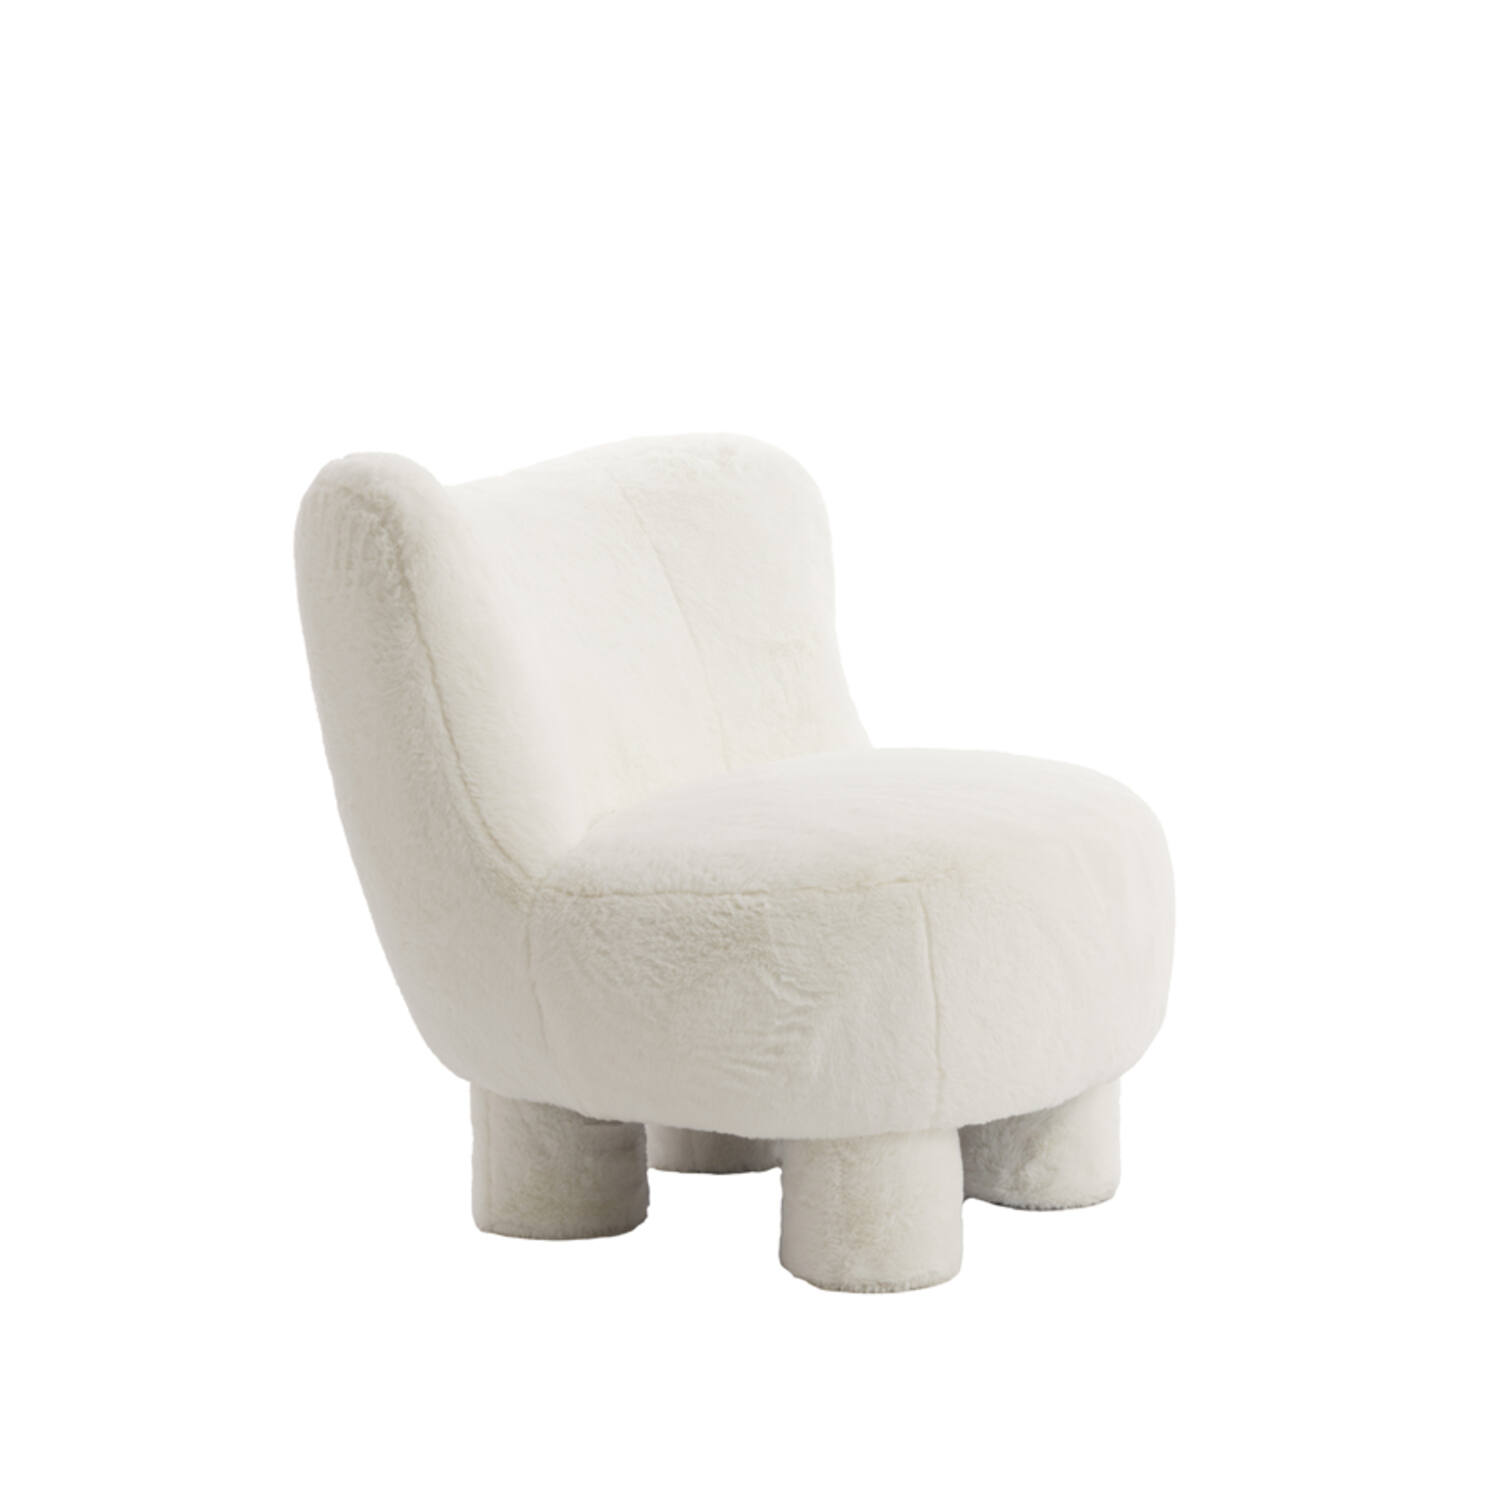 Chair 79x76x77 cm KAMOVU cream